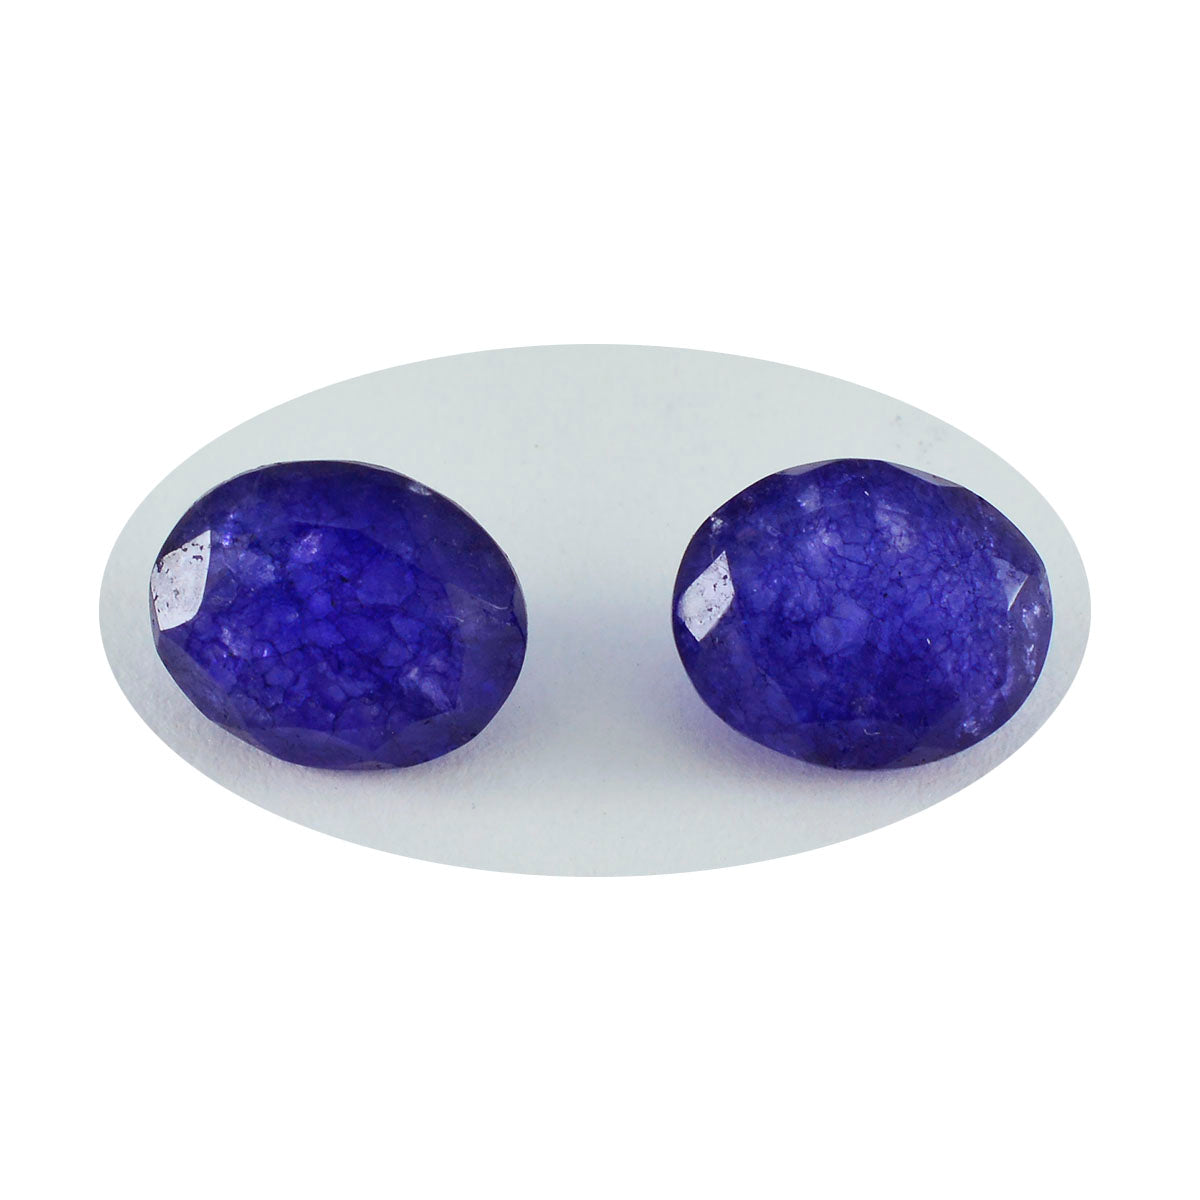 Riyogems 1PC echte blauwe jaspis gefacetteerd 7x9 mm ovale vorm aantrekkelijke kwaliteitsedelstenen